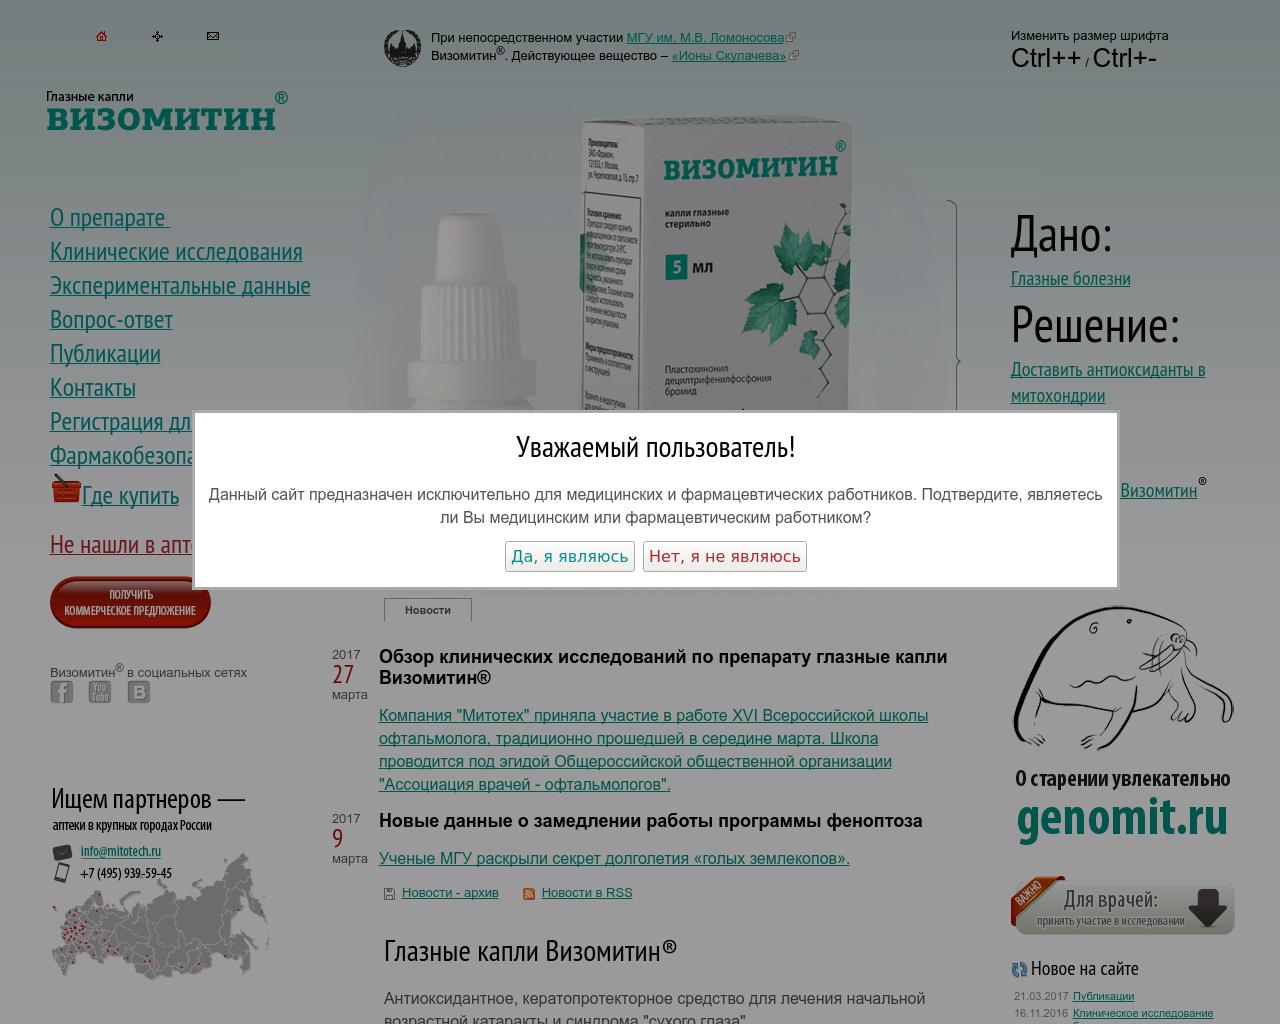 Изображение сайта везомитин.рф в разрешении 1280x1024